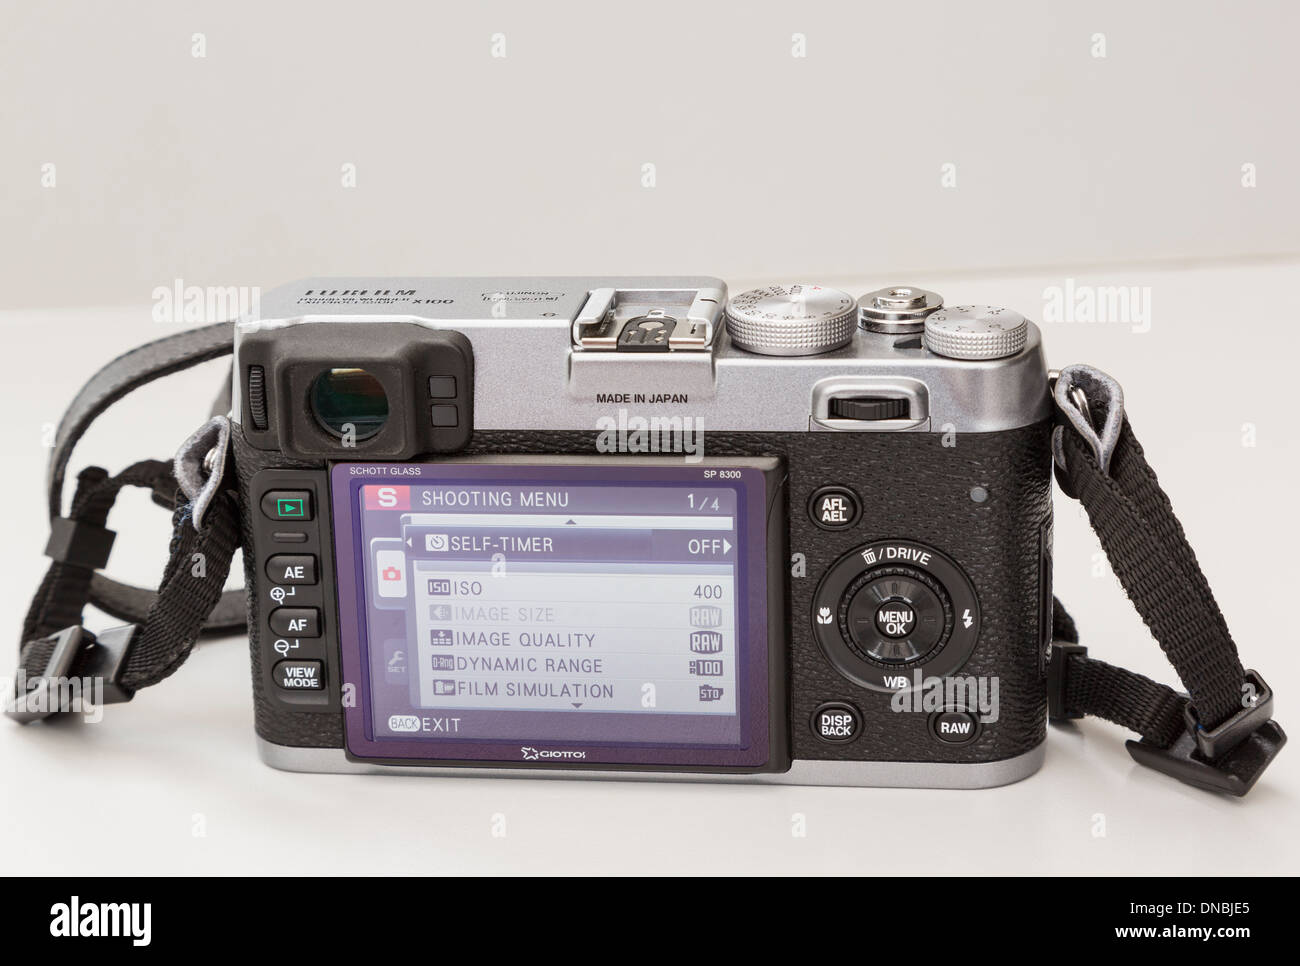 Fujifilm X100 retrò fotocamera digitale compatta attivato con display LCD posteriore che mostra menu e Made in Japan label Foto Stock